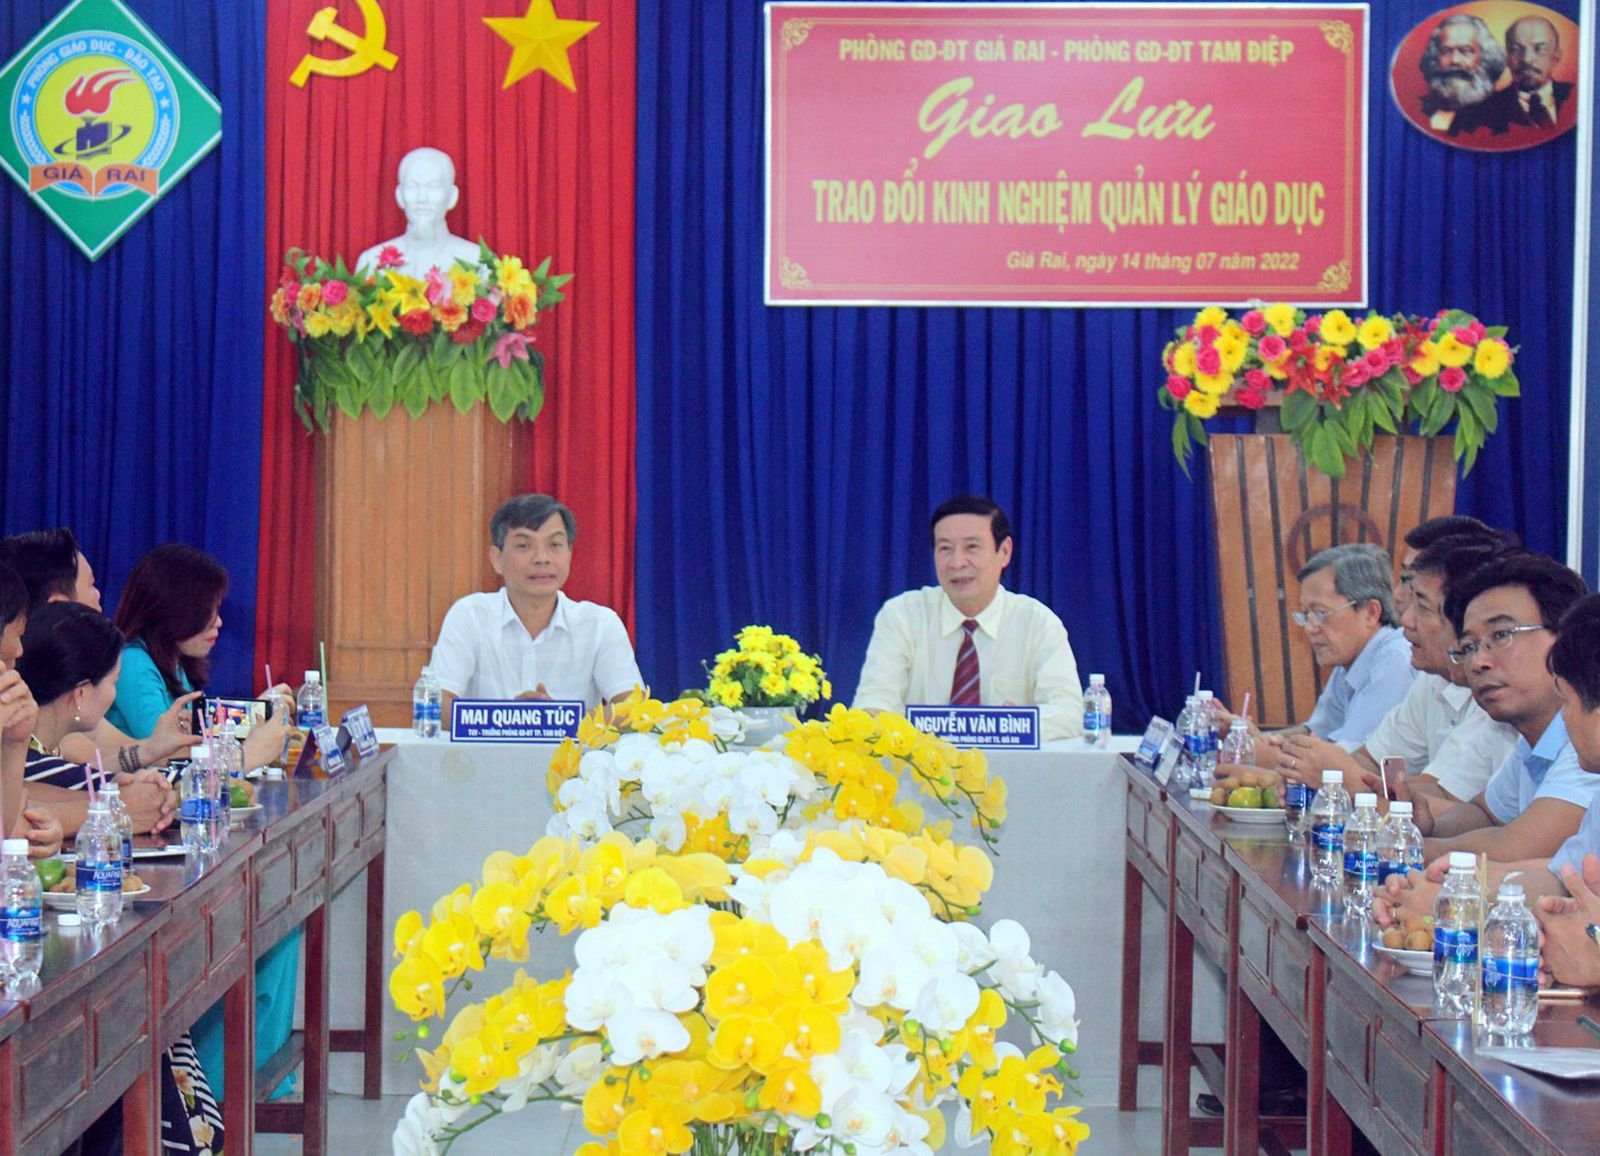 Đoàn CBQL Phòng Giáo dục và Đào tạo thành phố Tam Điệp, tỉnh Ninh Bình tổ chức chuyến thăm và giao lưu, trao đổi kinh nghiệm công tác quản lý giáo dục tại Phòng Giáo dục và Đào tạo thị xã Giá Rai, tỉnh Bạc Liêu